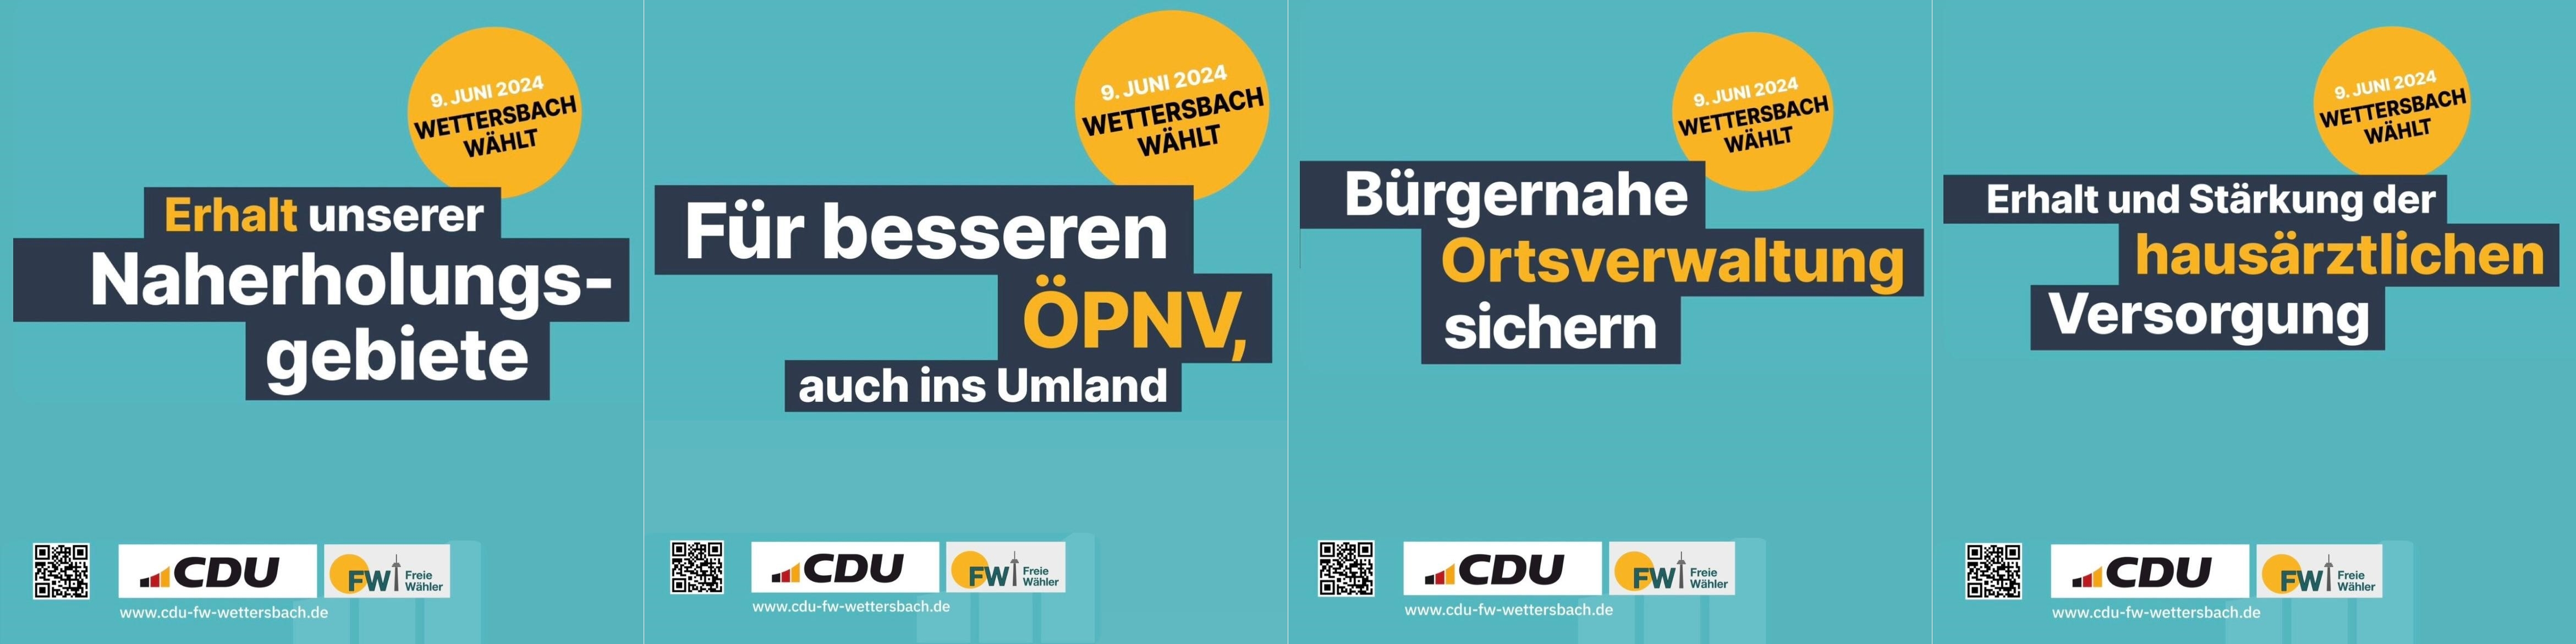 CDU-FW Wettersbach: Unser Wahlprogramm